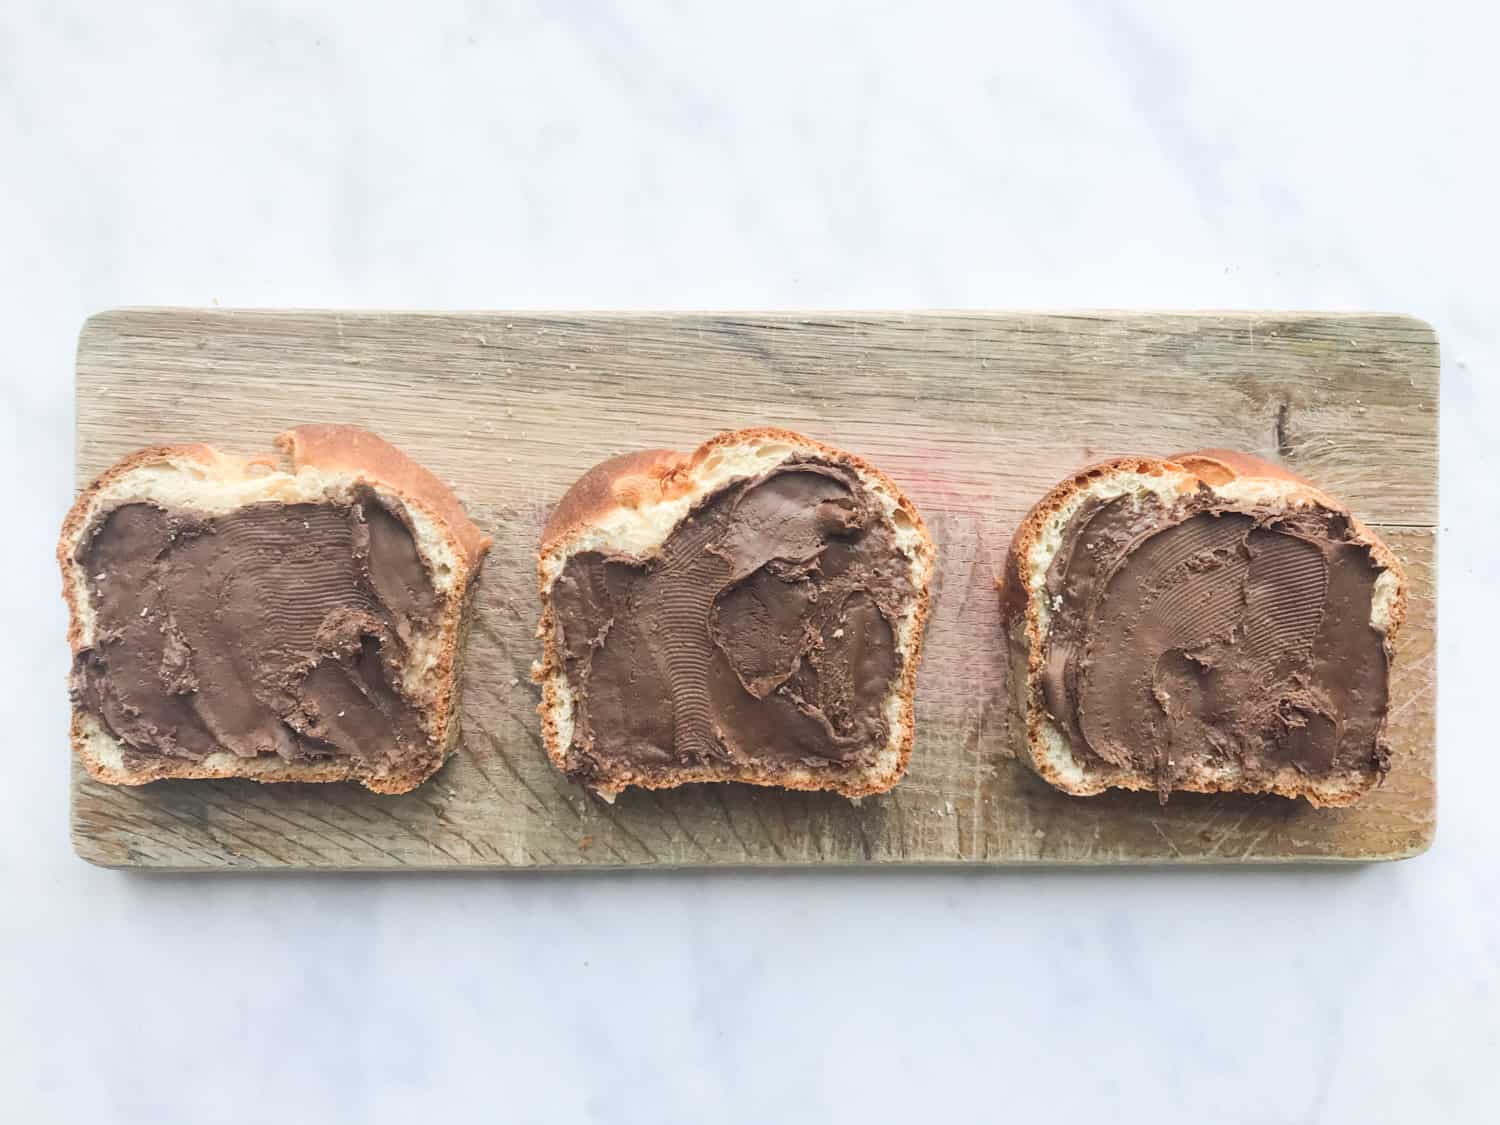 Three slices of brioche bread spread with Nutella